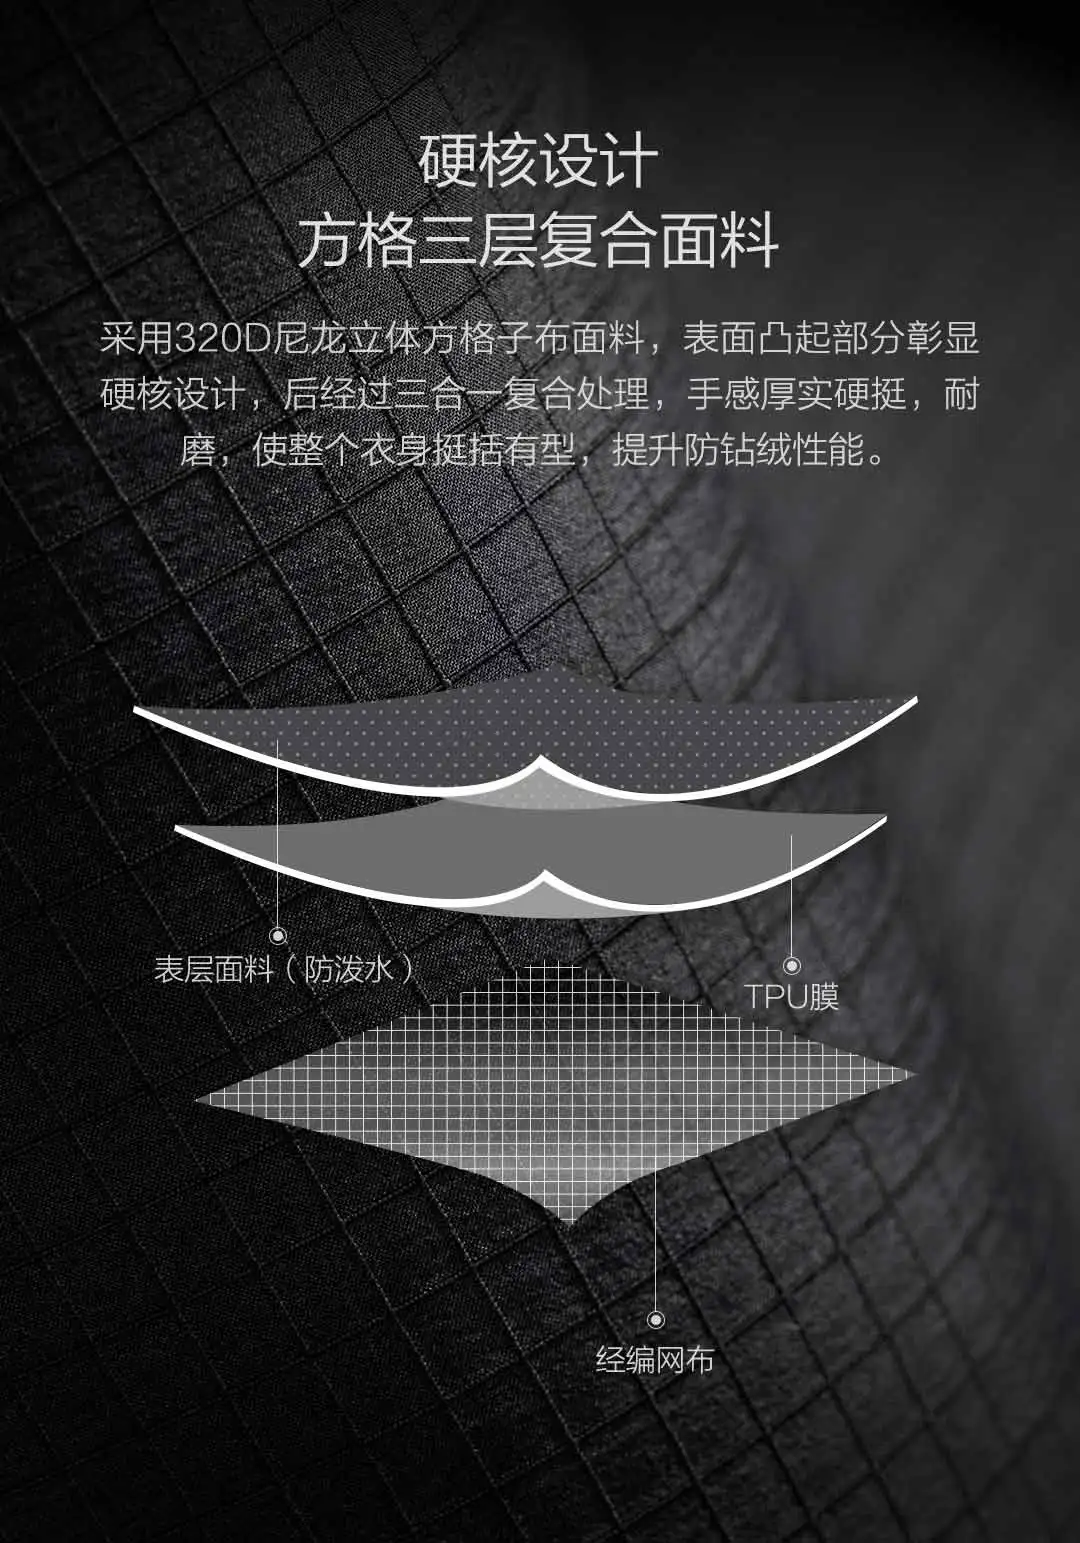 Xiaomi 90 очков мужской воротник Повседневный пуховик слой композита ткань 90% белый утиный пух 4 класс водоотталкивающий теплый